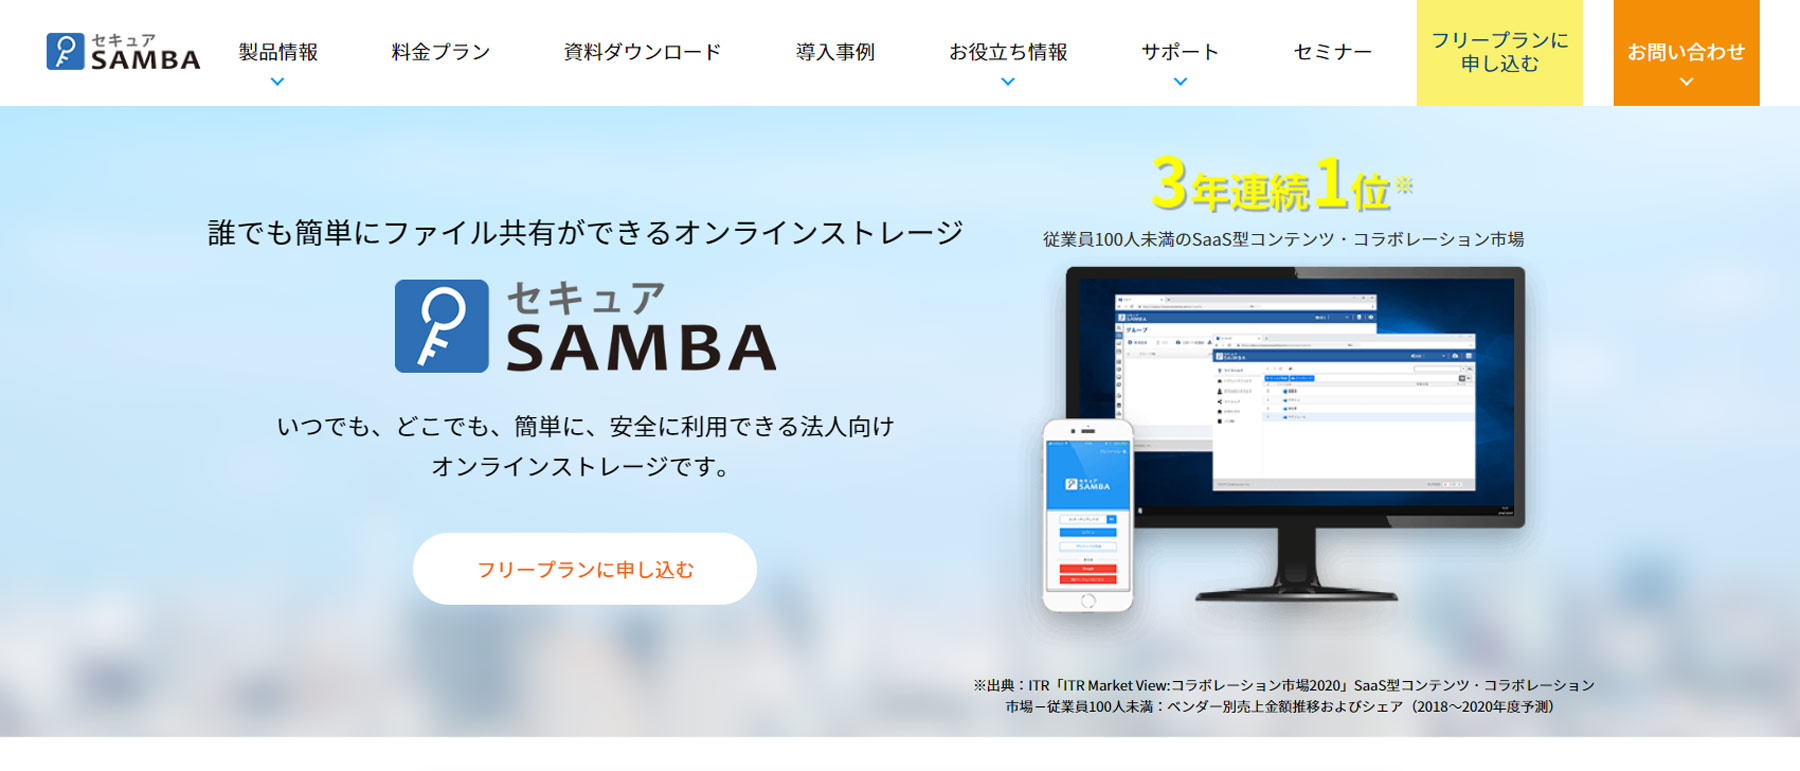 セキュアSAMBA公式Webサイト